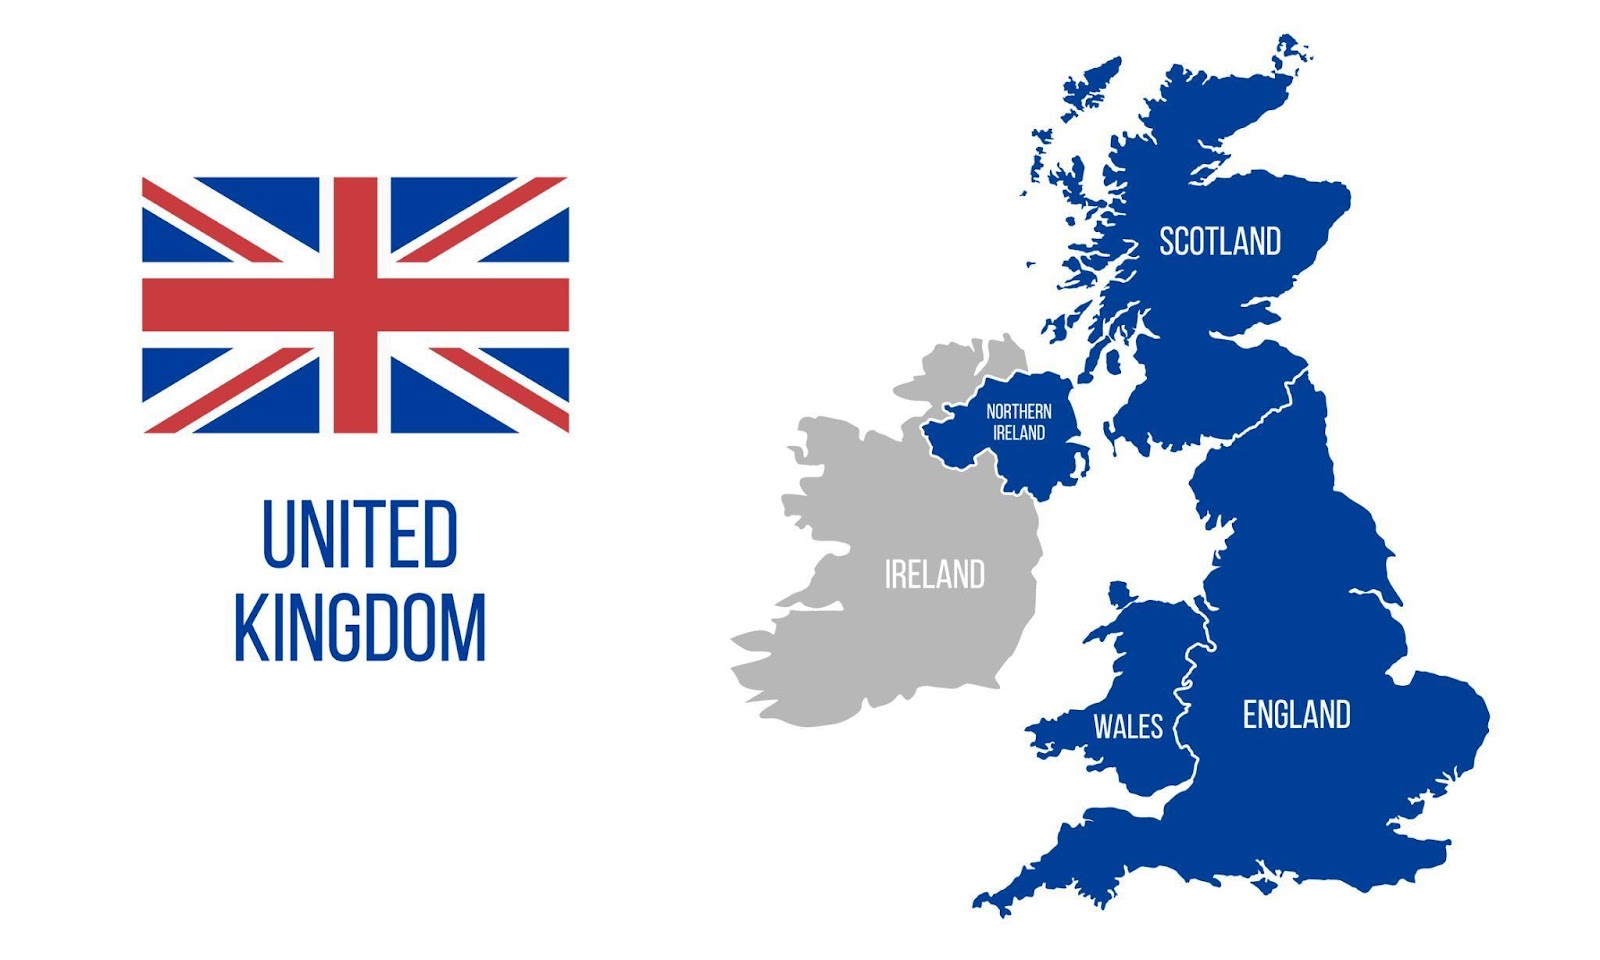 Si noti che il Regno Unito (UK) e la Gran Bretagna, sebbene molto simili, non sono sinonimi in questo contesto legislativo